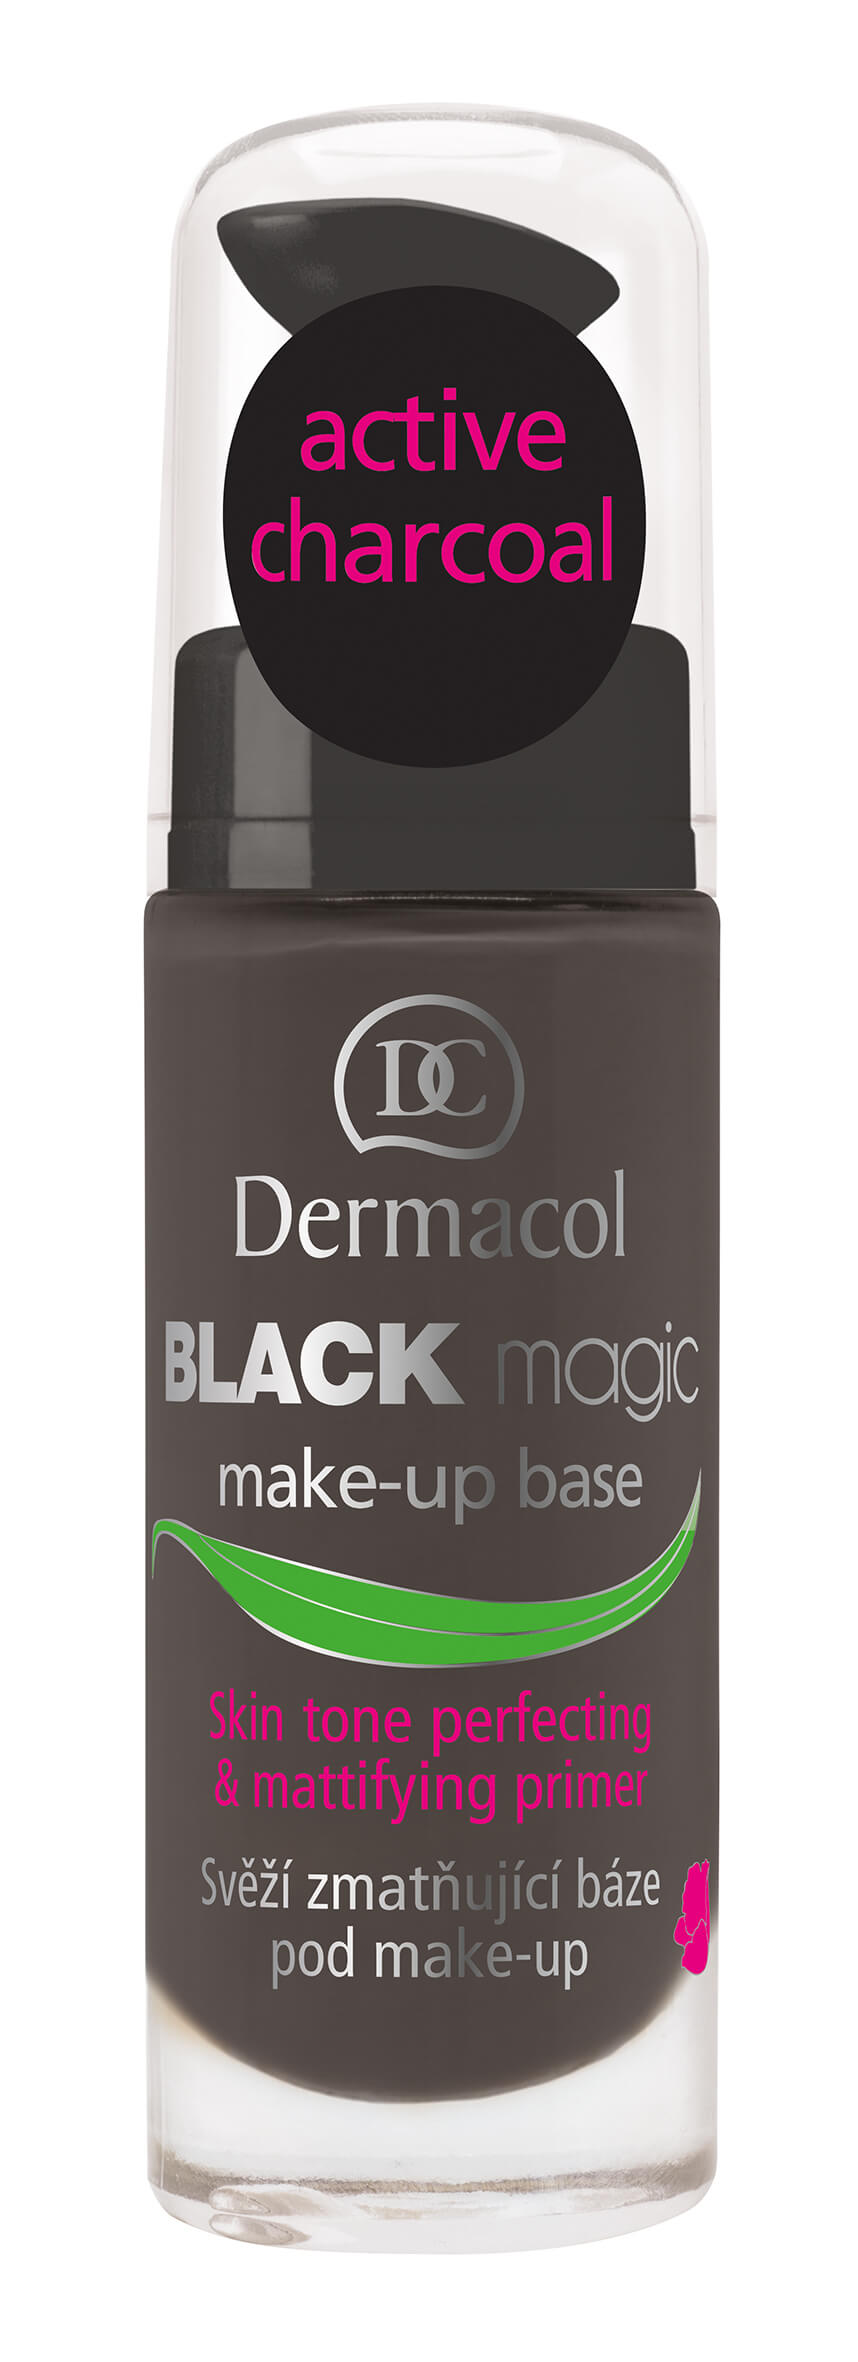 Dermacol Zmatňující báze pod make-up Black Magic (Make-Up Base) 20 ml